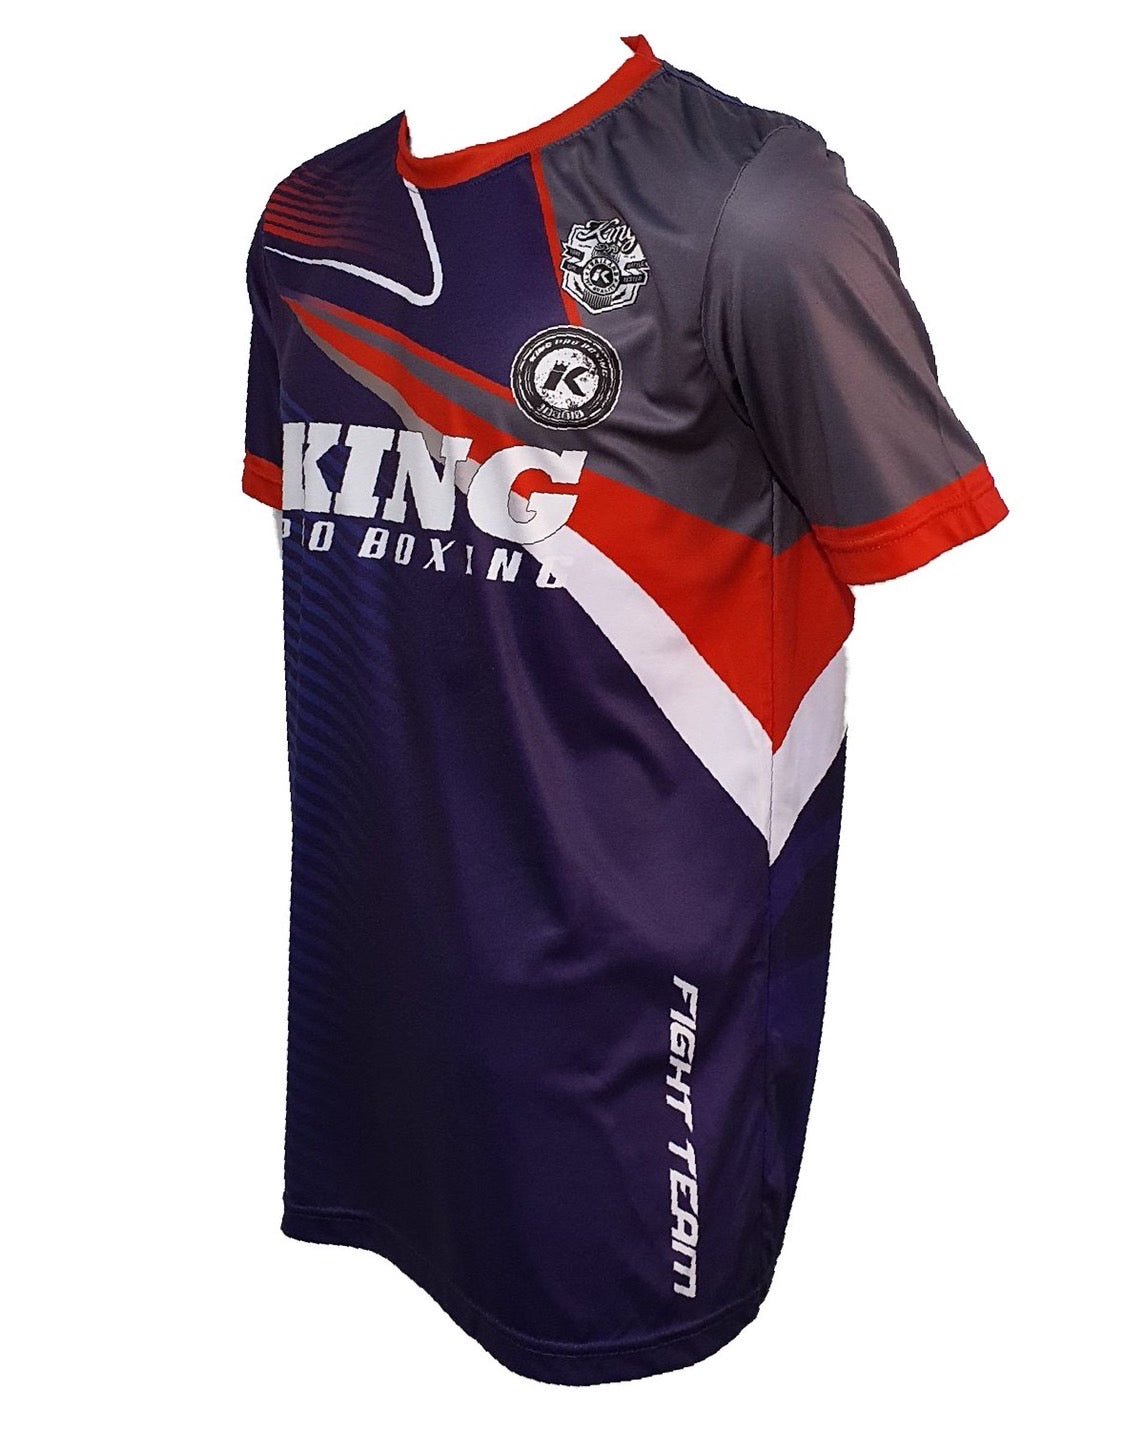 King Pro Boxing T-shirt R28 King Pro Boxing